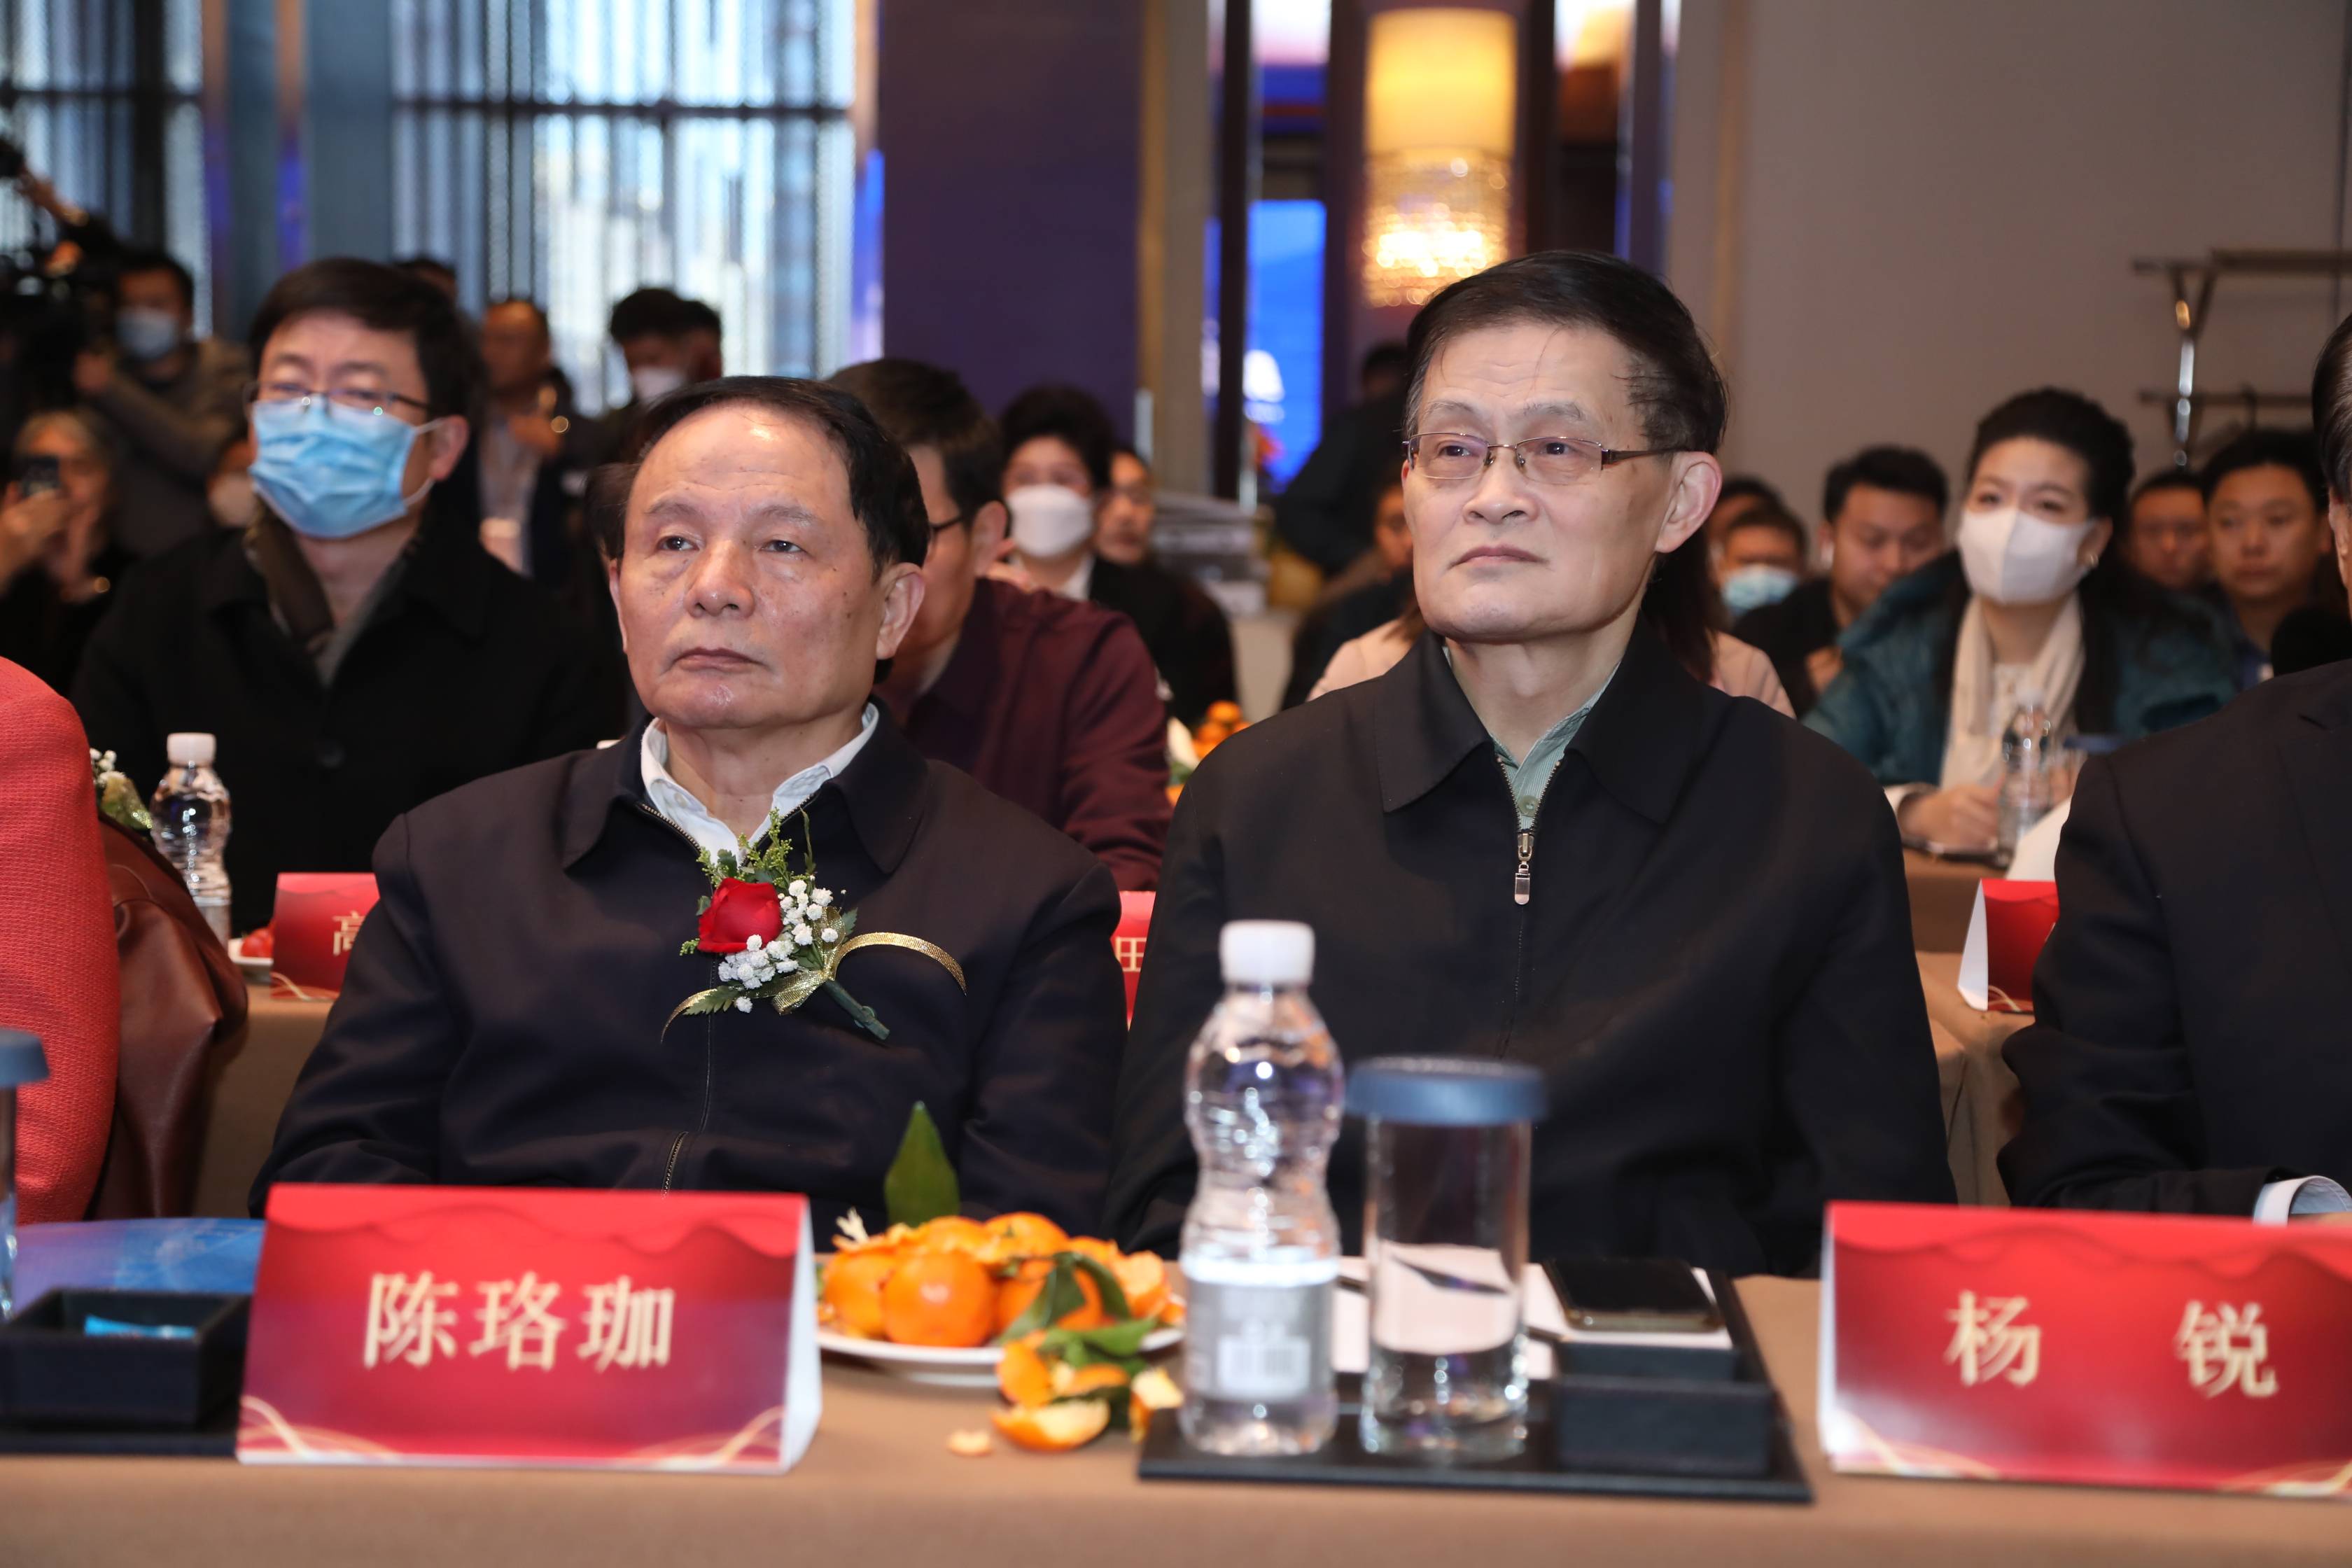 中医药溯源认证组委会启动仪式在京举行